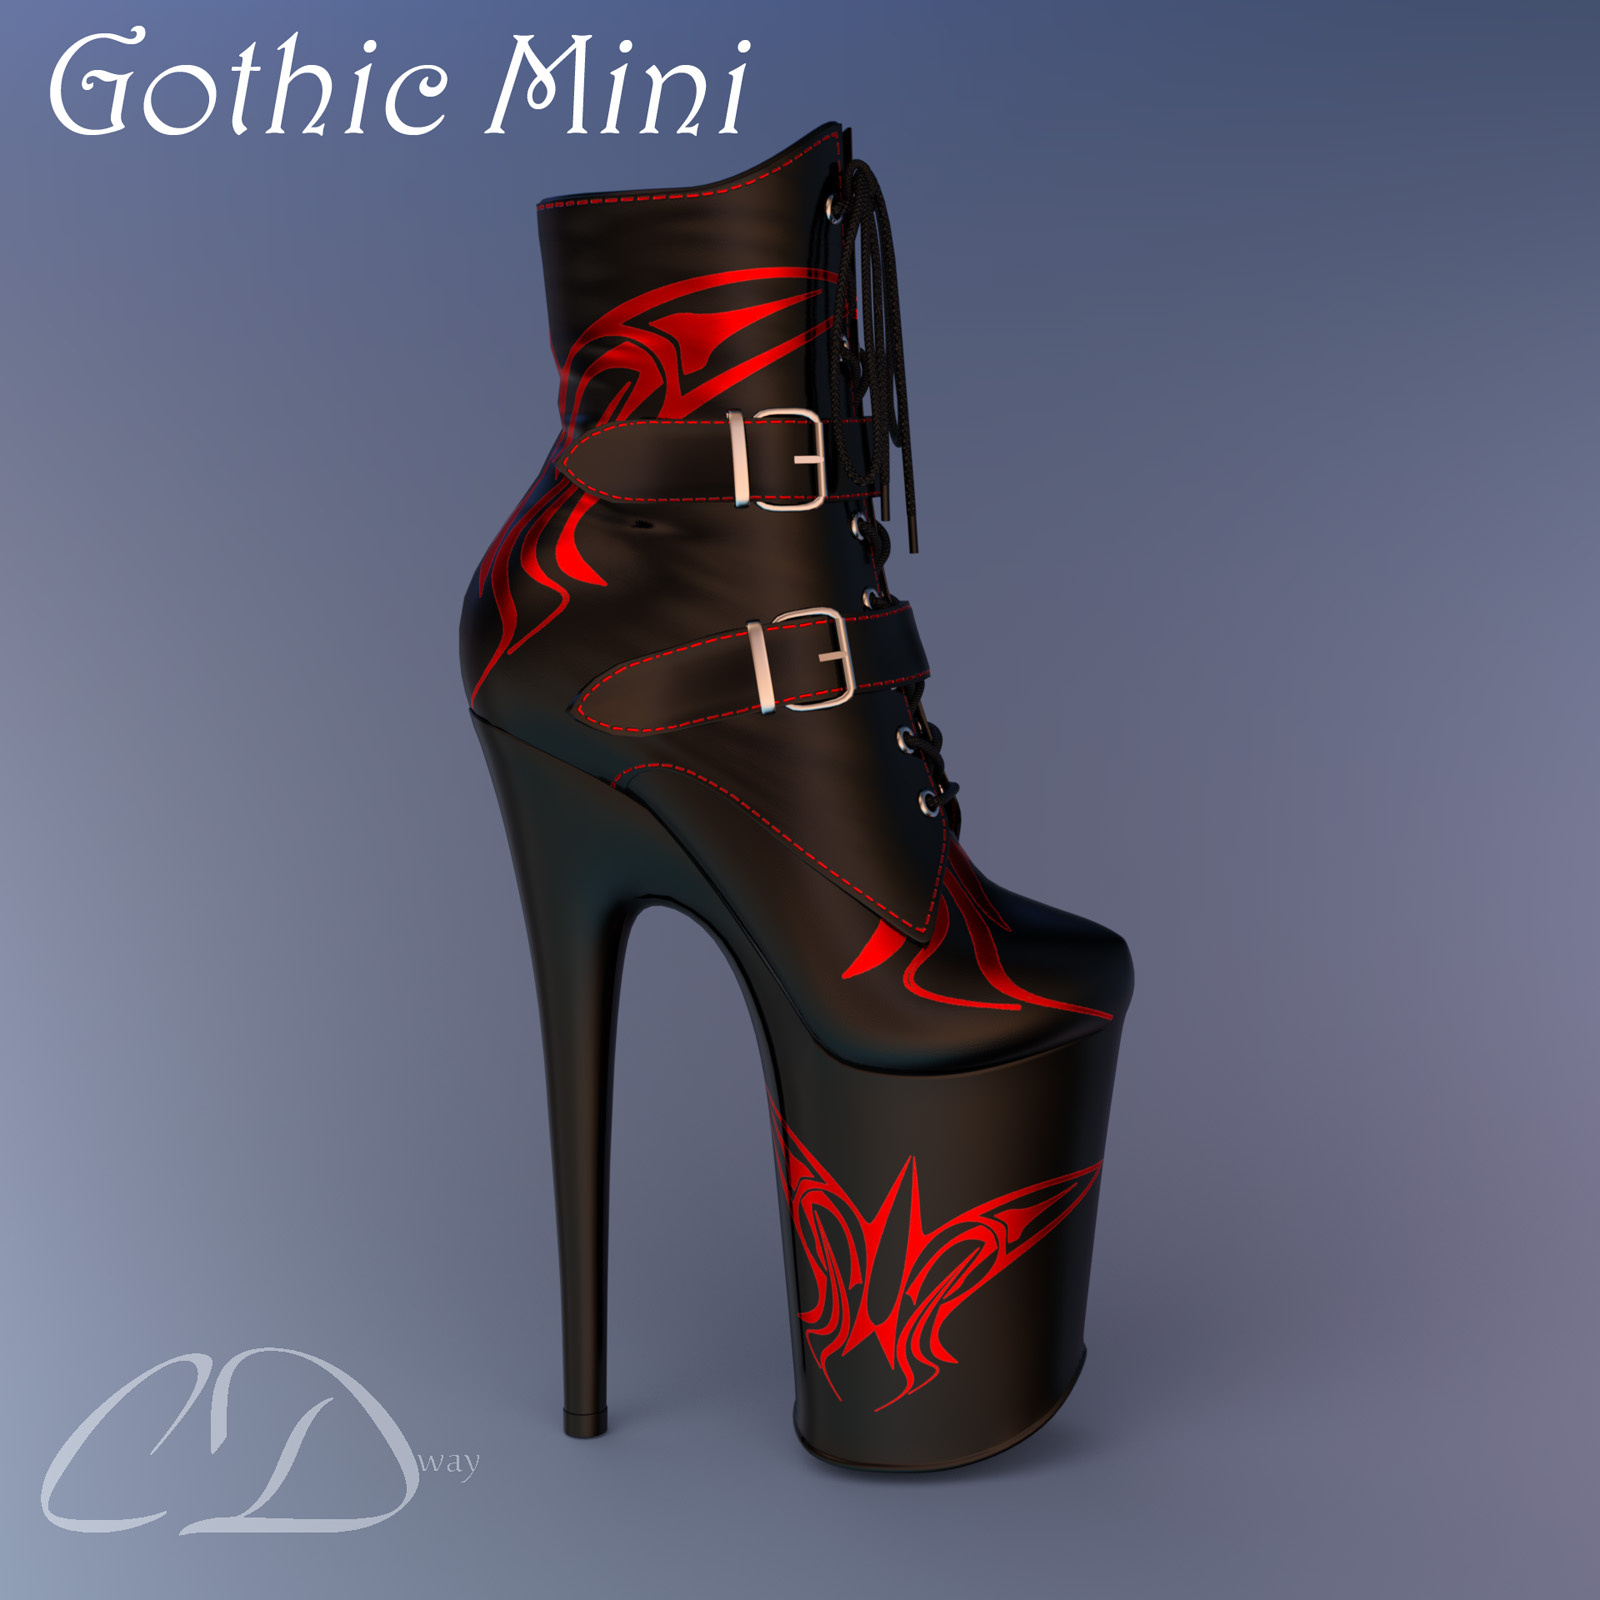 Gothic Mini for G8F_DAZ3DDL